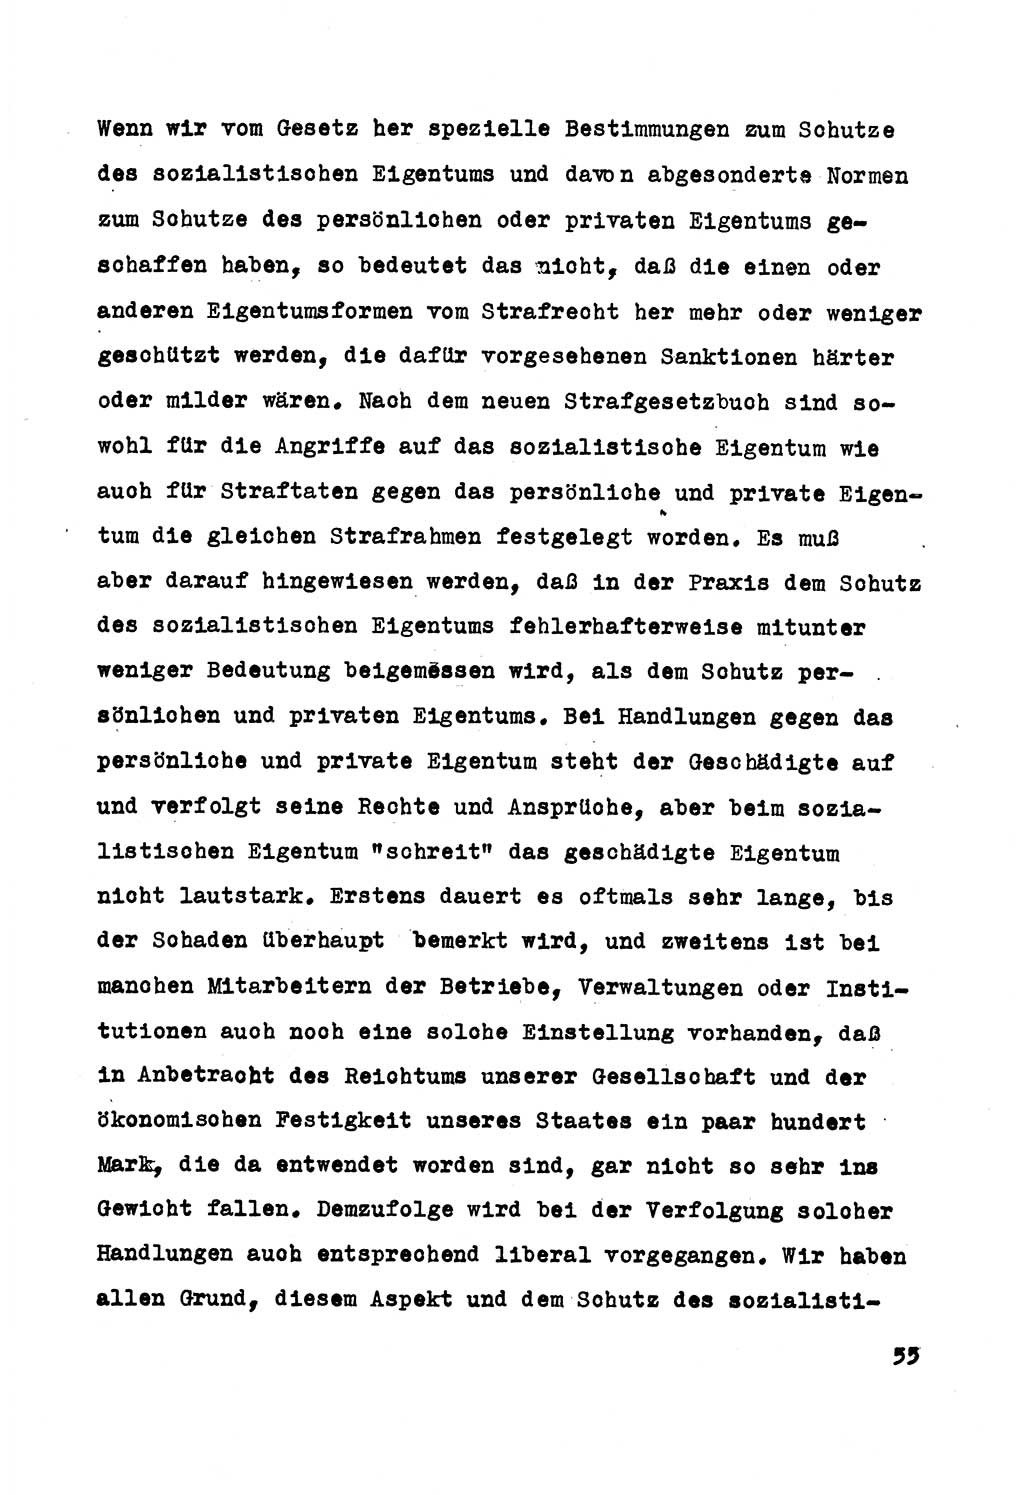 Strafrecht der DDR (Deutsche Demokratische Republik), Besonderer Teil, Lehrmaterial, Heft 5 1970, Seite 55 (Strafr. DDR BT Lehrmat. H. 5 1970, S. 55)